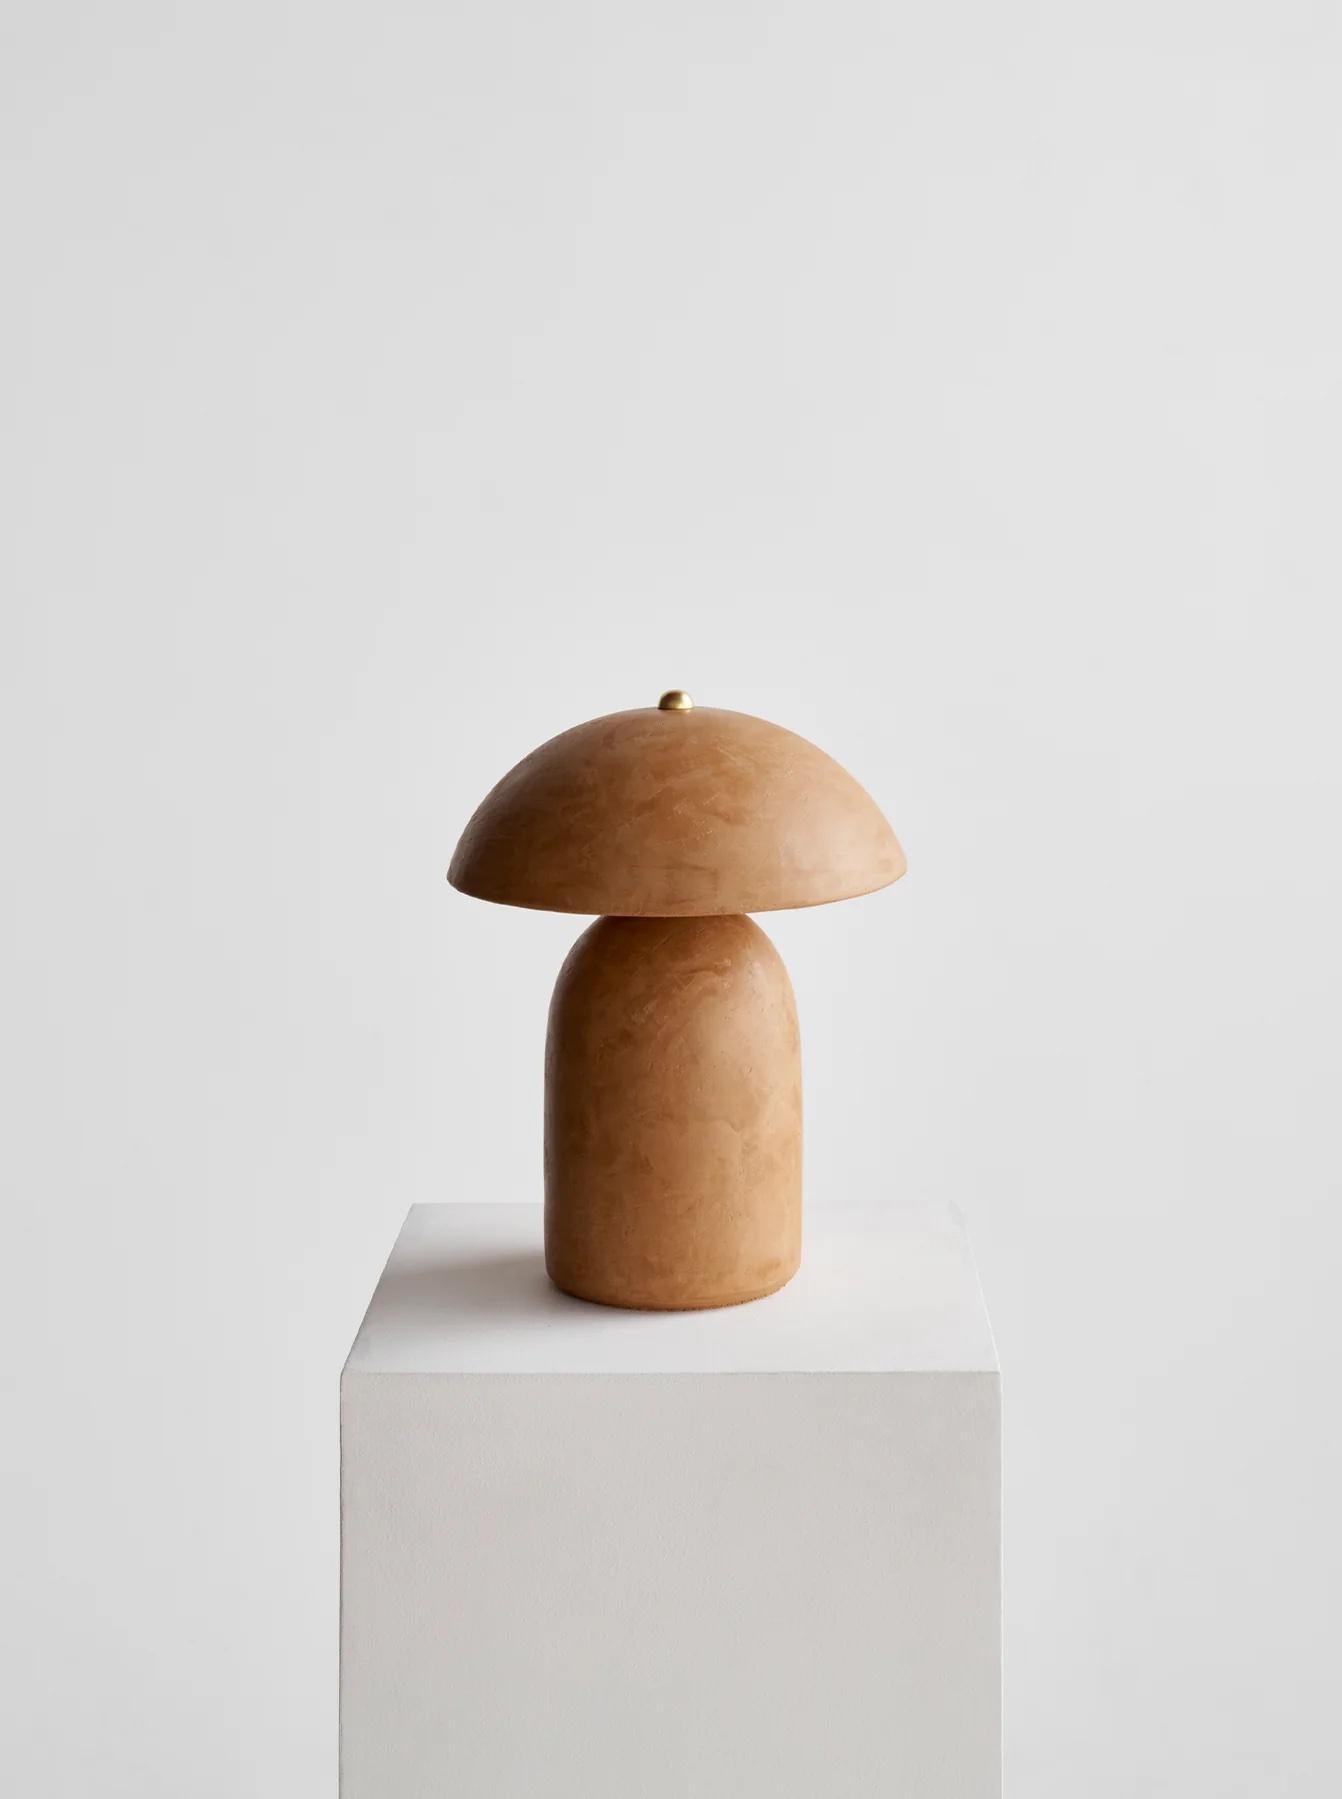 La lampe Tera - Lime Plaster de Ceramicah est composée d'un abat-jour en céramique et d'une base en céramique. Une fois les pièces en céramique passées au four, la finition en plâtre de chaux est appliquée à la main en deux couches, puis poncée et